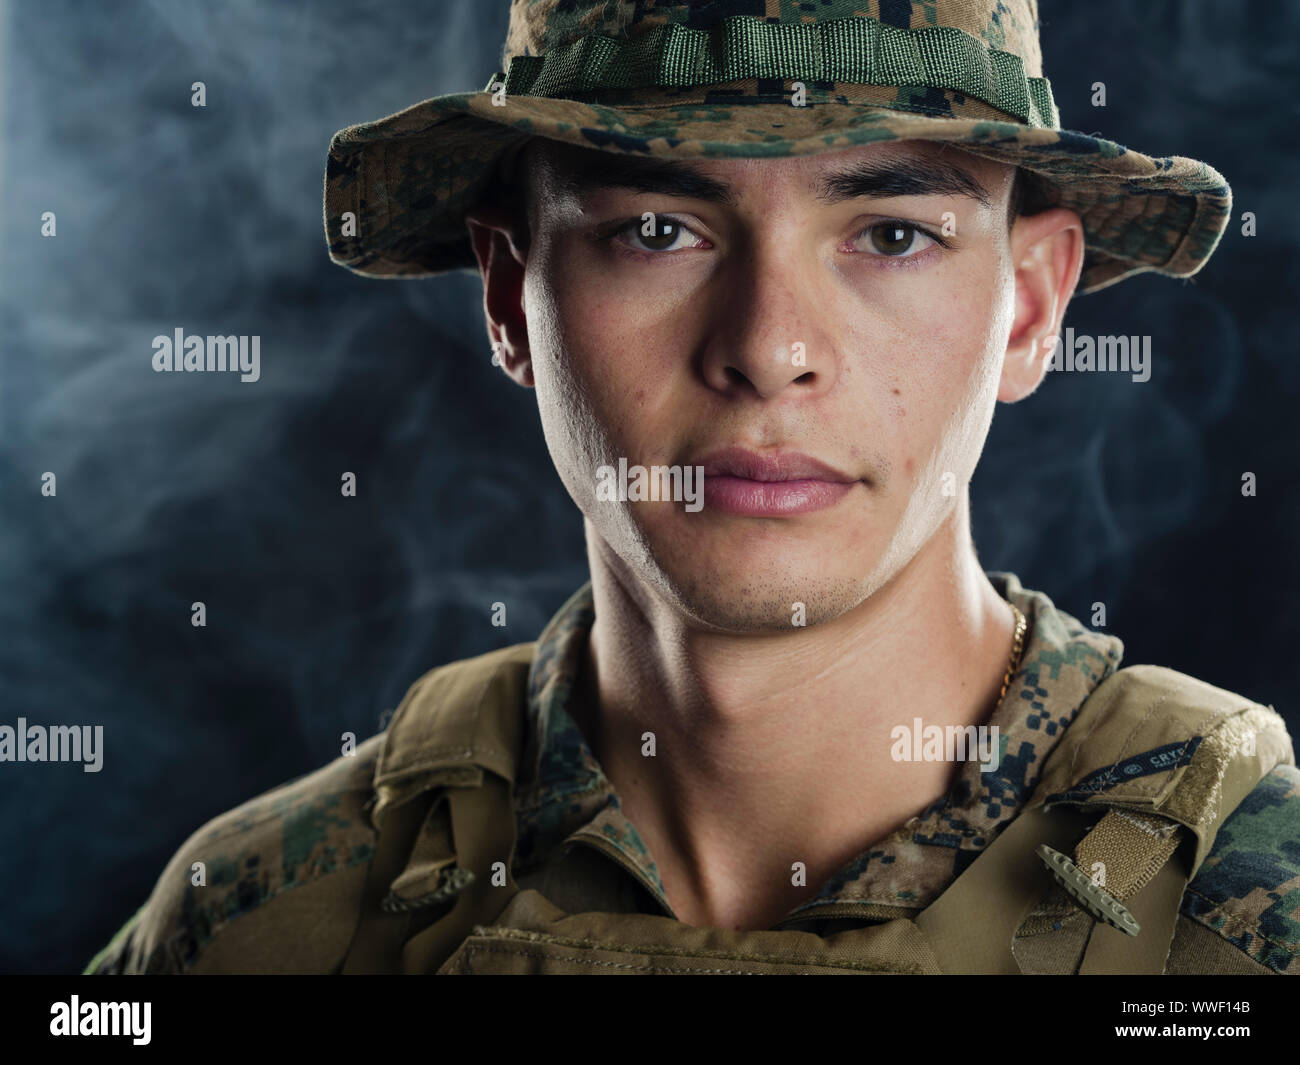 United States Marine in camouflage uniform Stock Photo